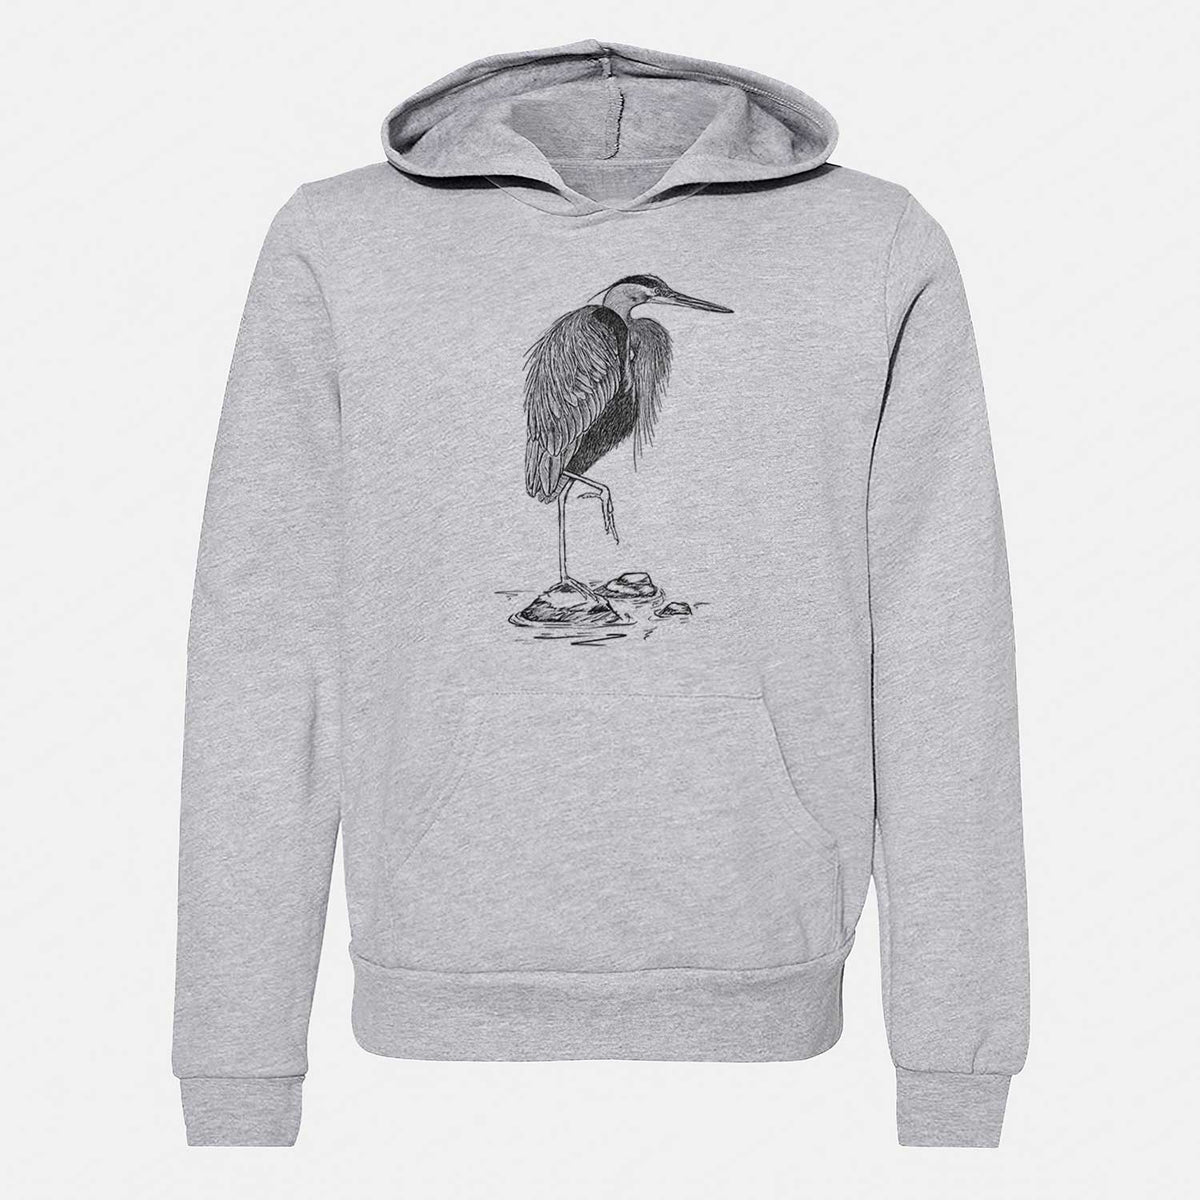 Ardea herodias - Great Blue Heron - Youth Hoodie Sweatshirt